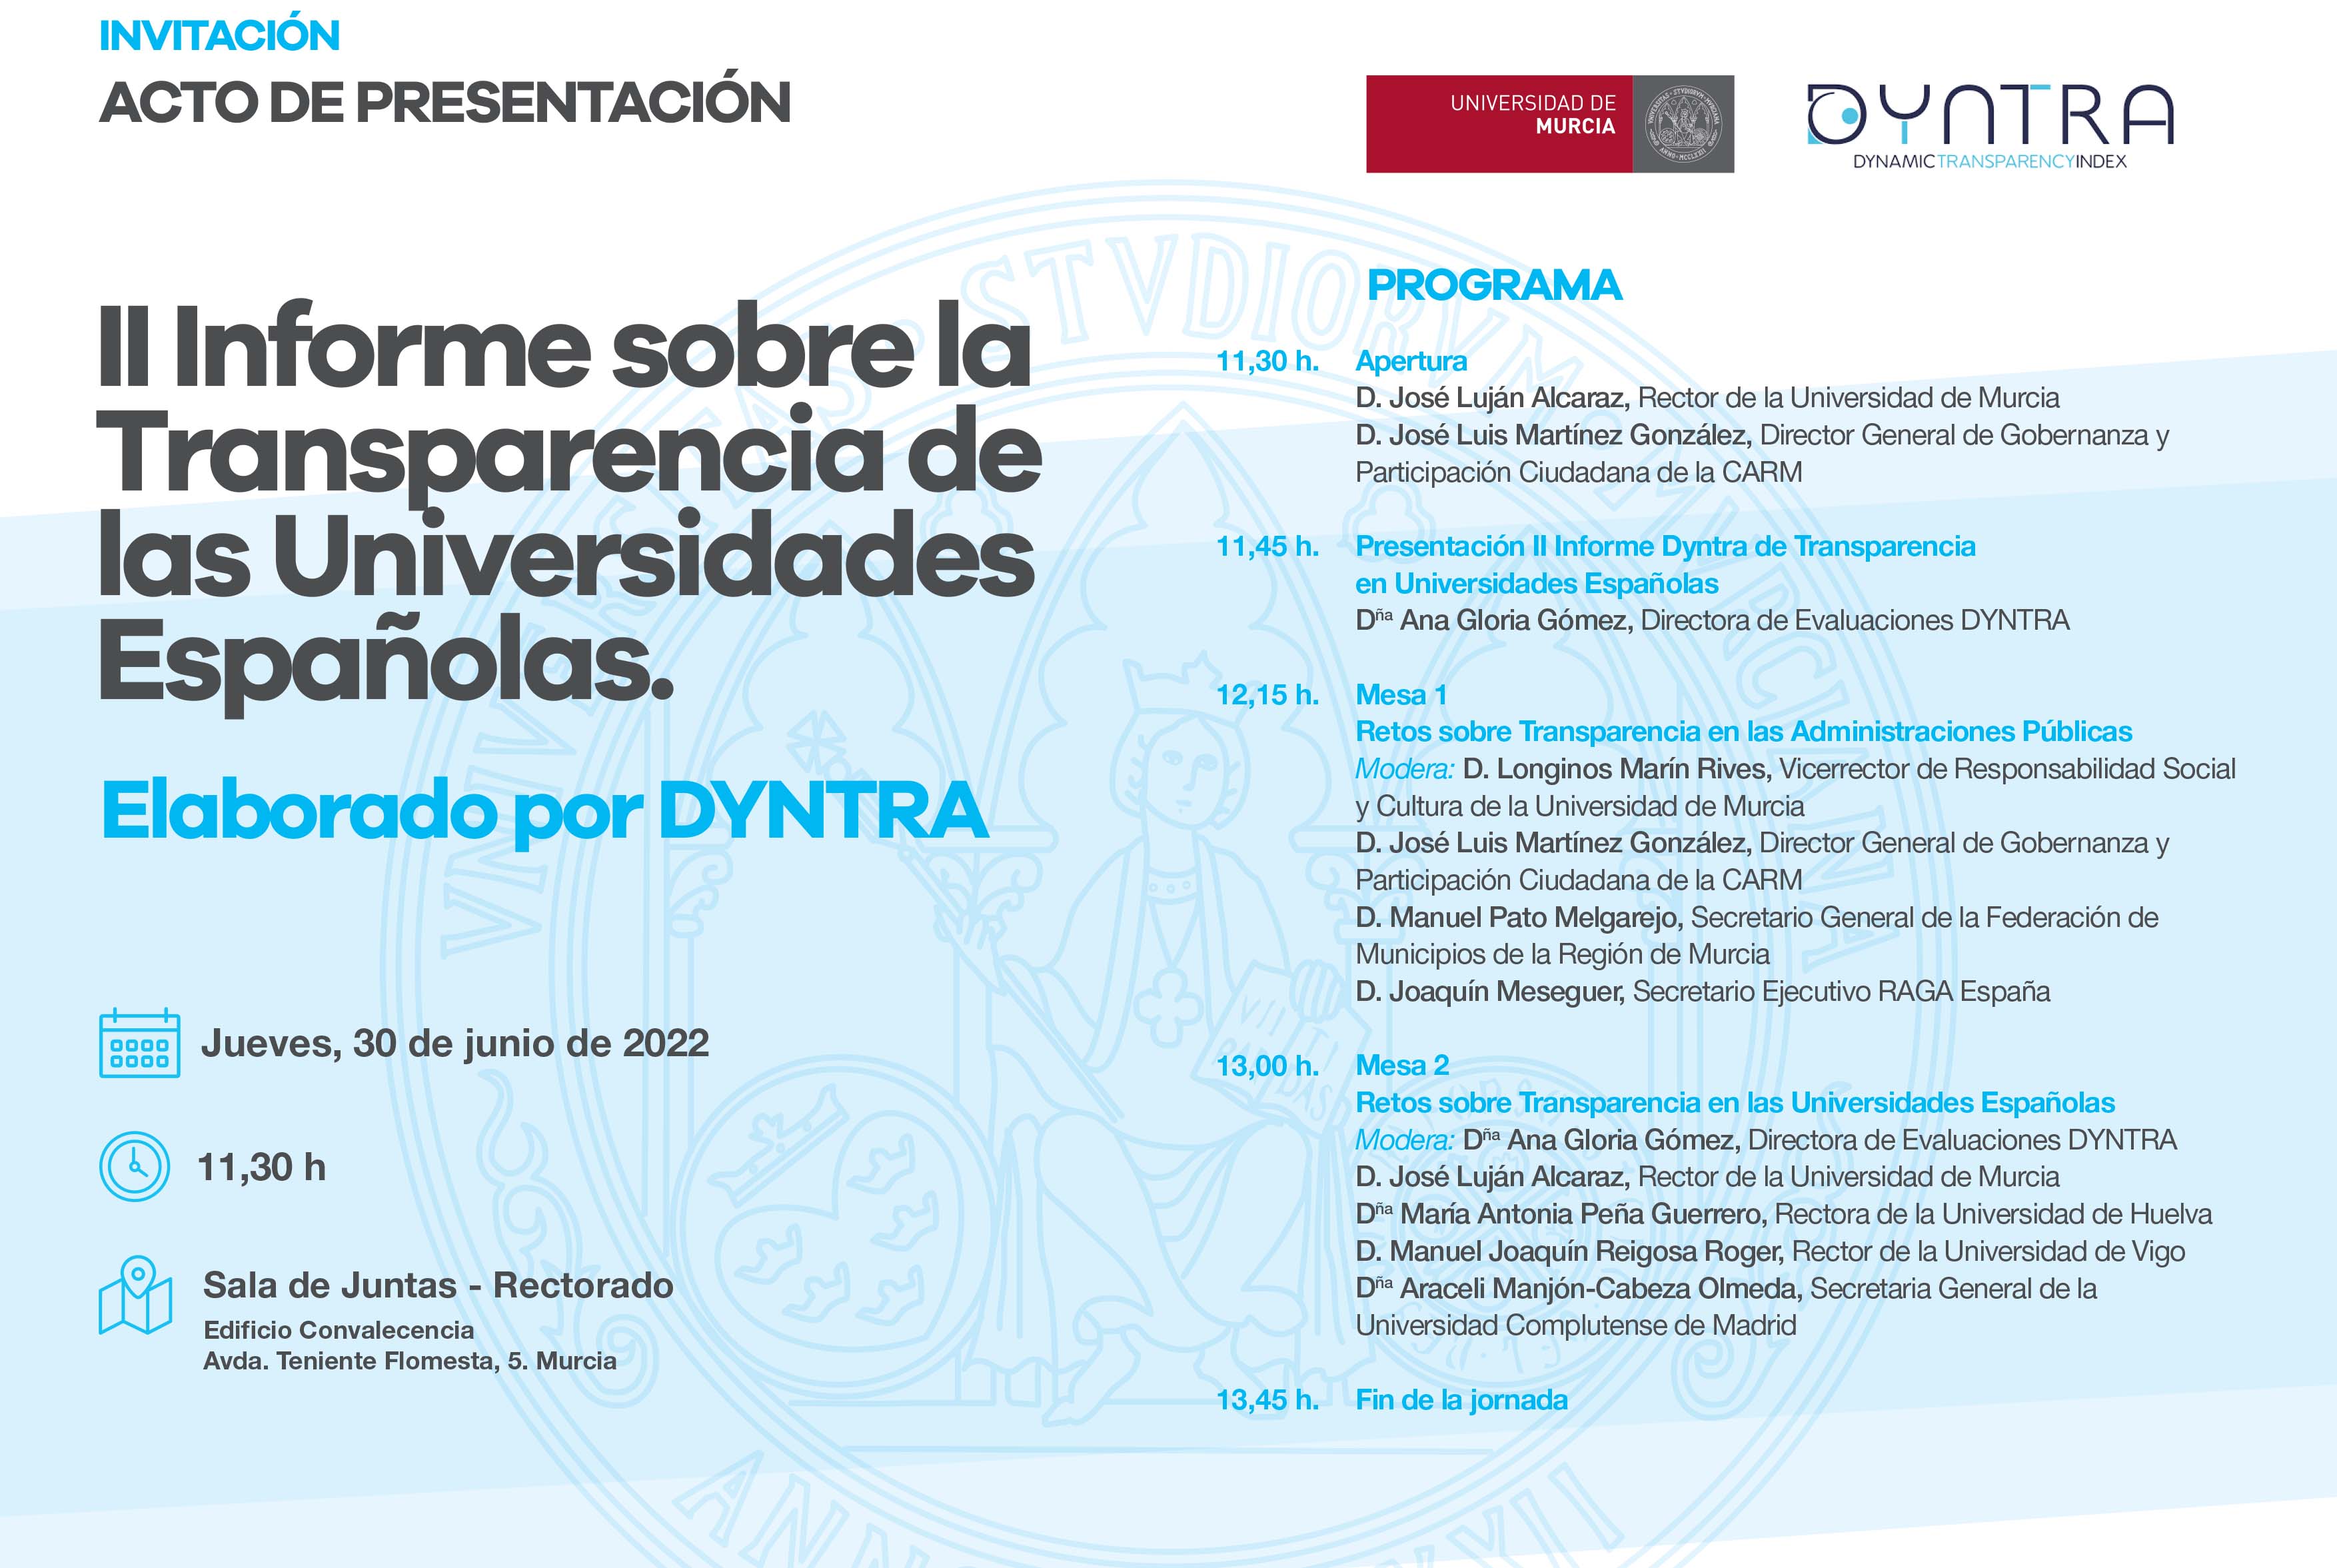 Informe de transparencia de DYNTRA, presentado en la Universidad de Murcia